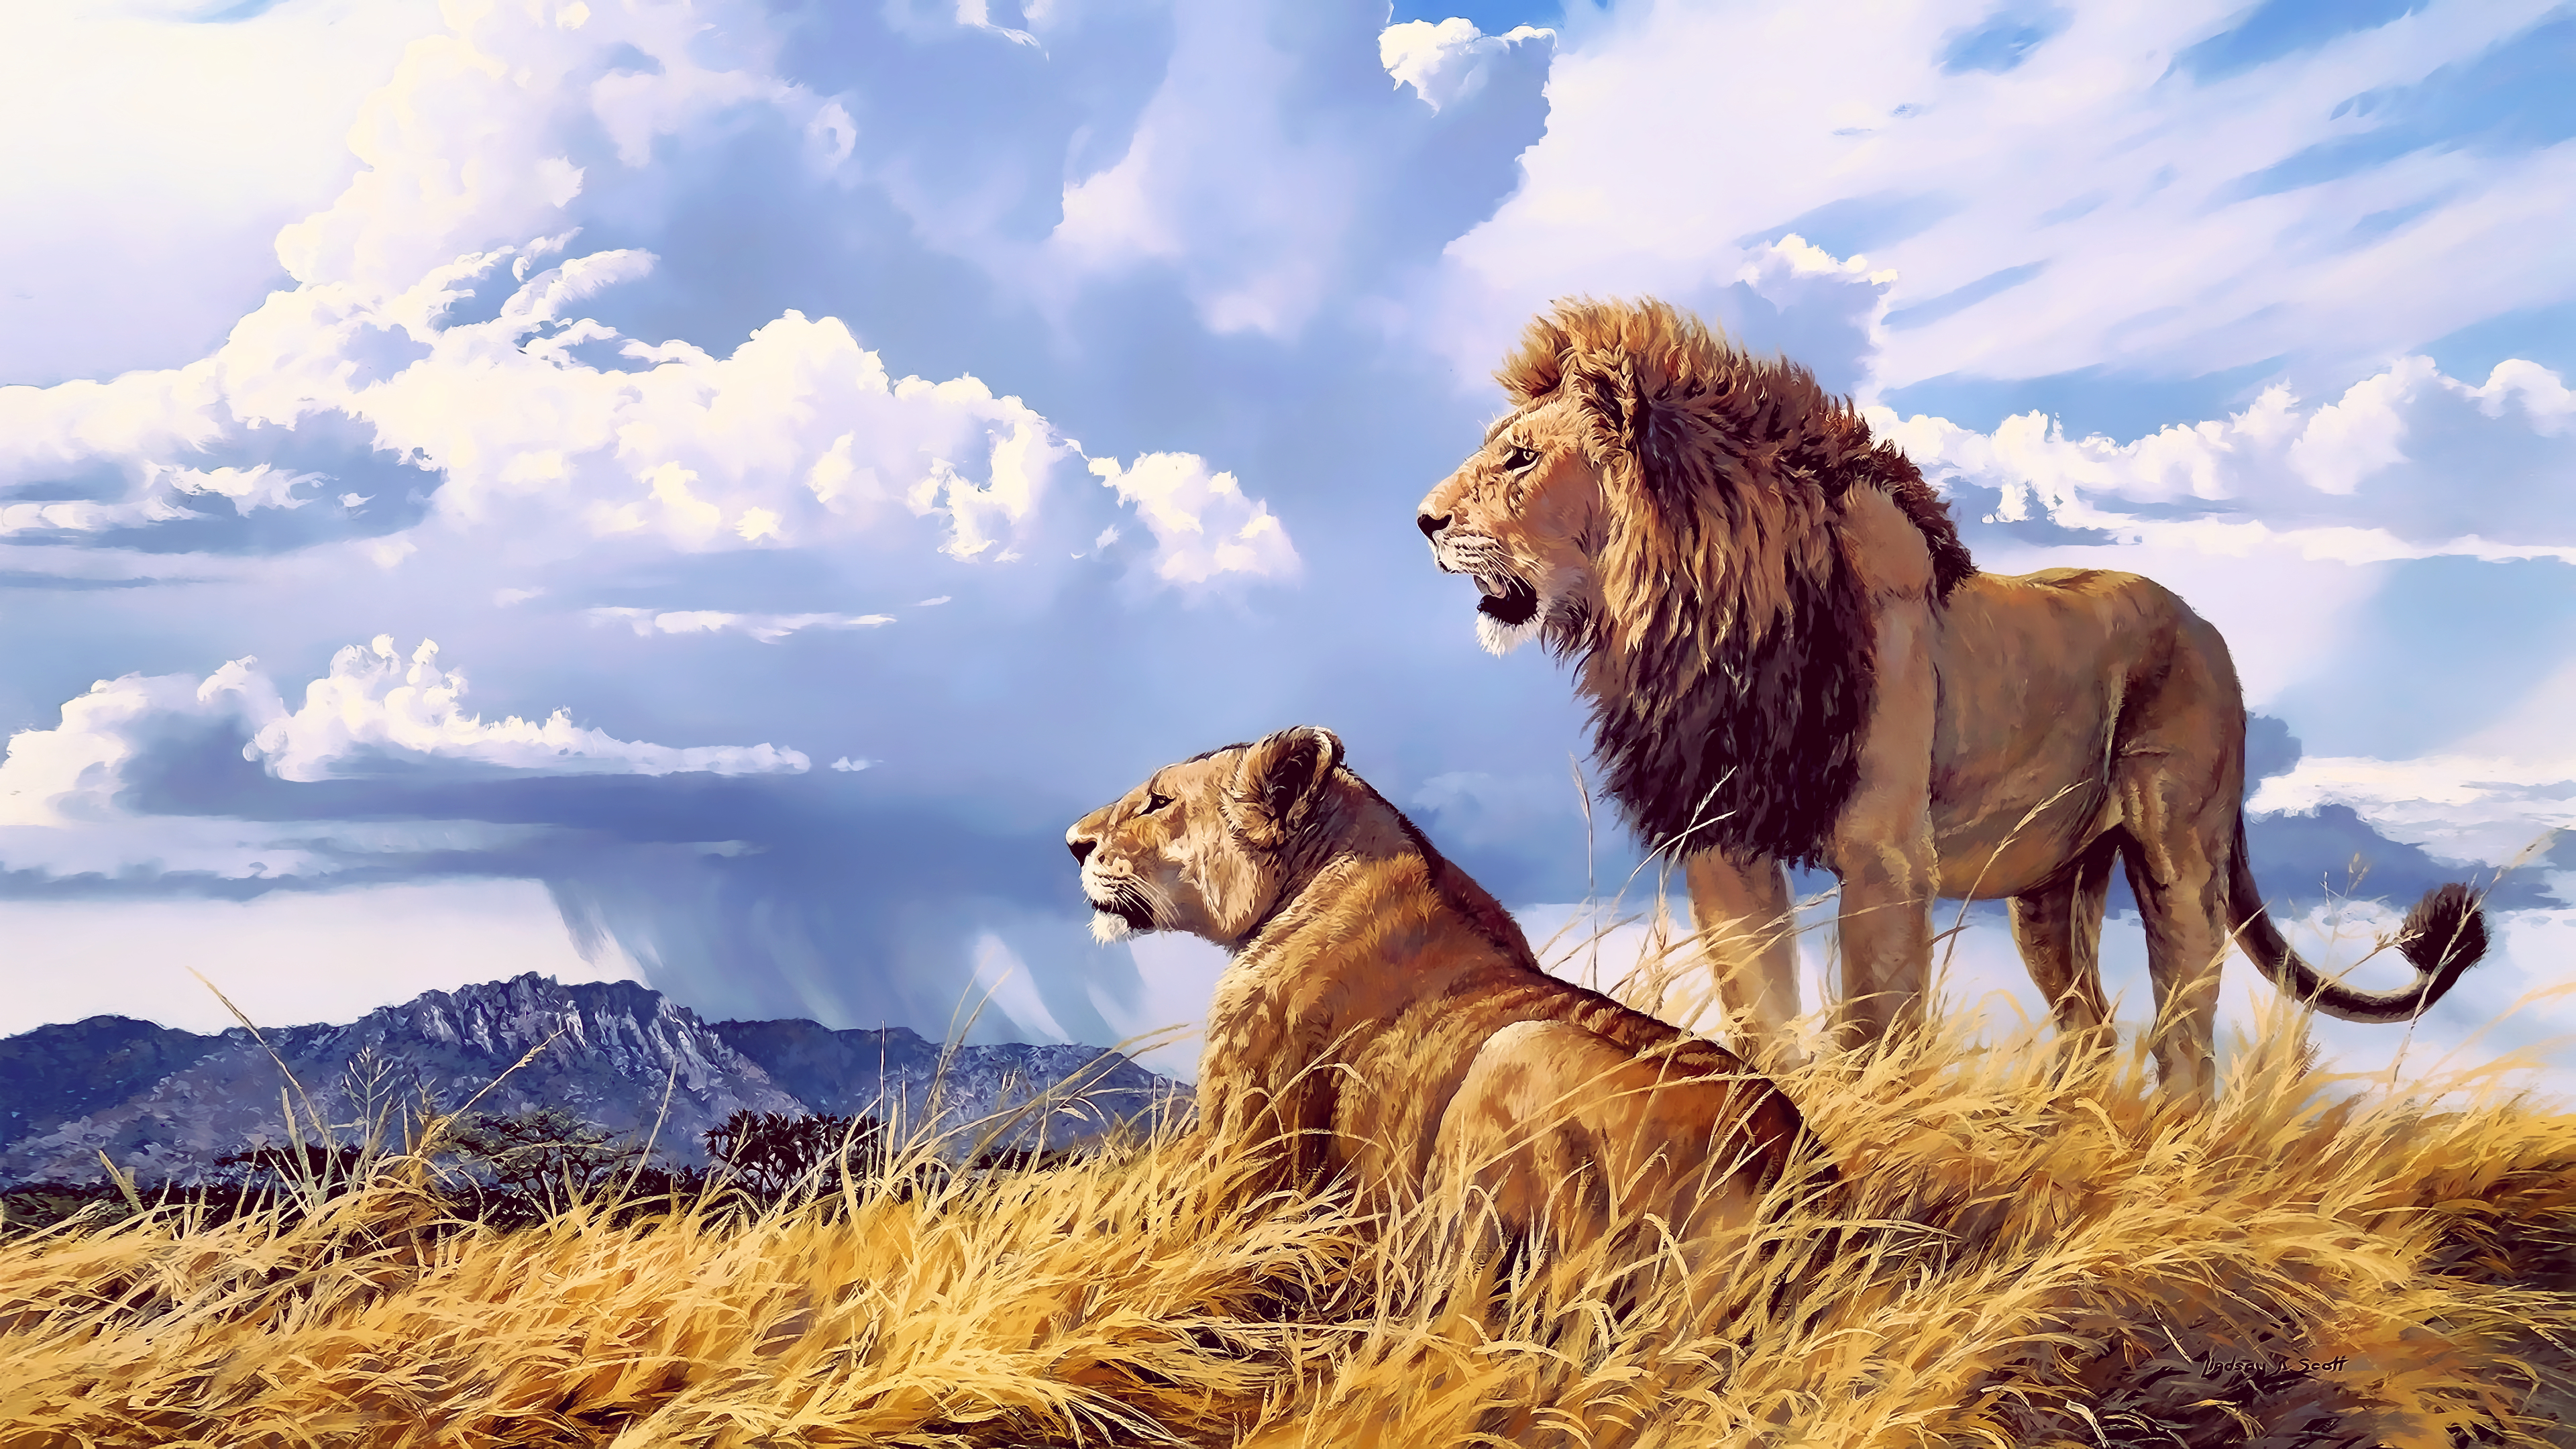 ライオンの壁紙4k,野生動物,ライオン,マサイライオン,ネコ科,陸生動物